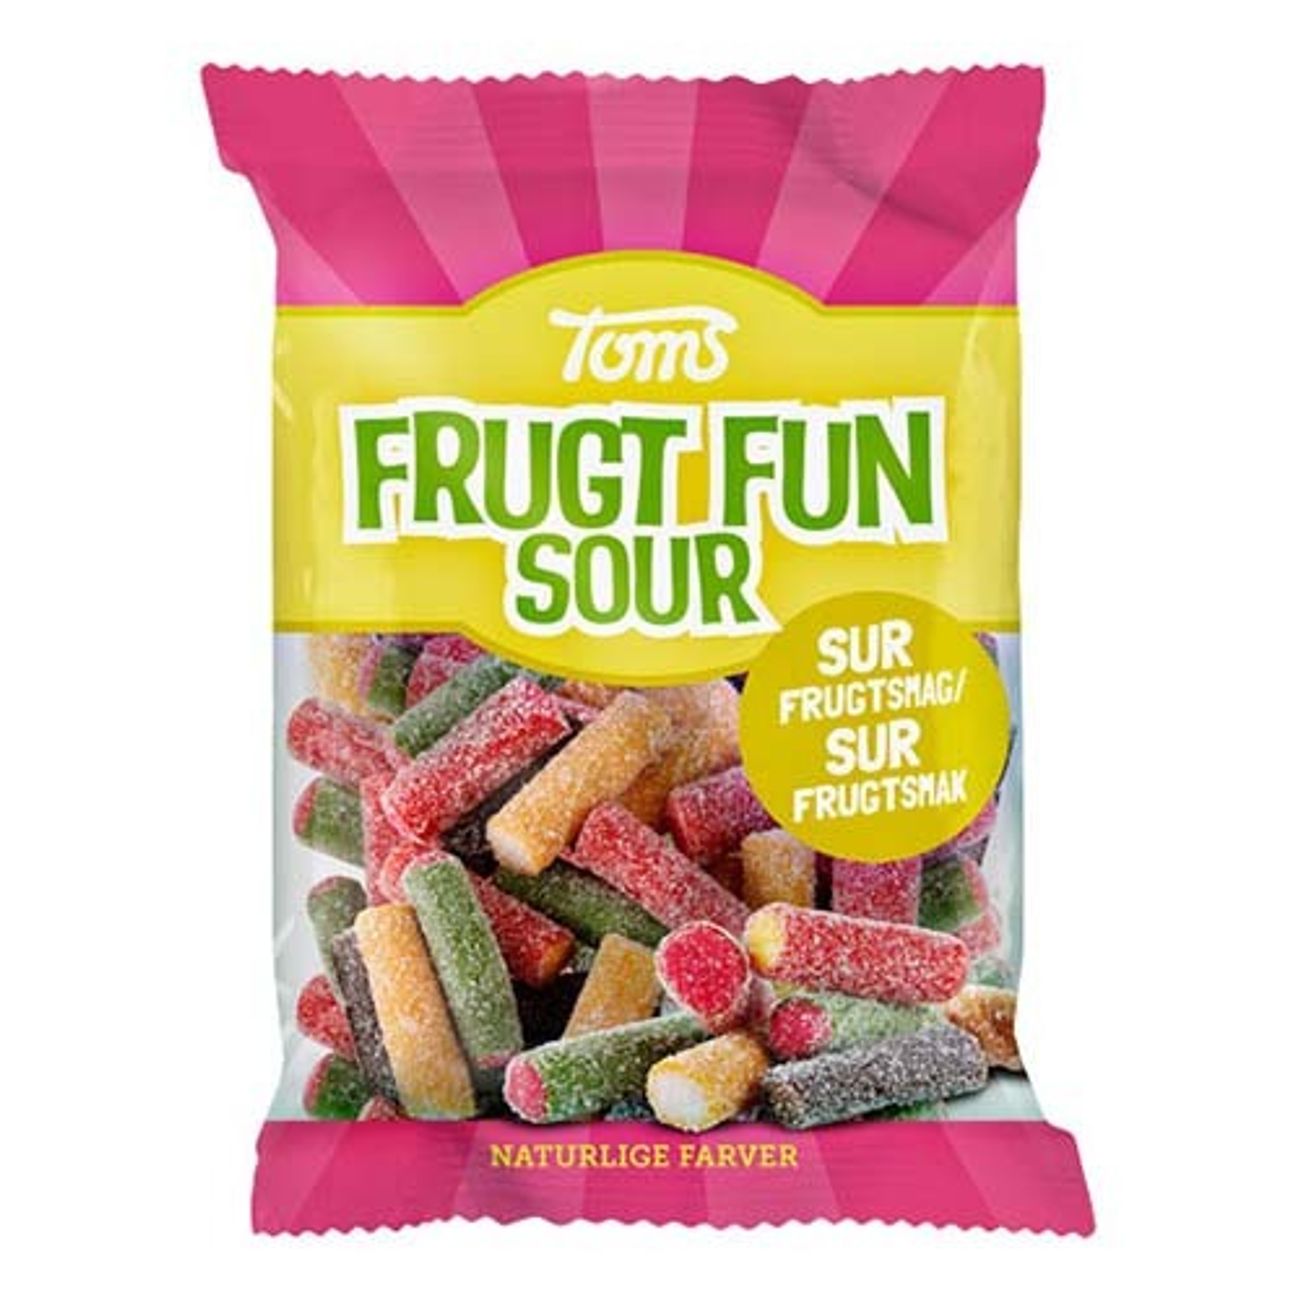 frugt-fun-sour-pa-pase-1